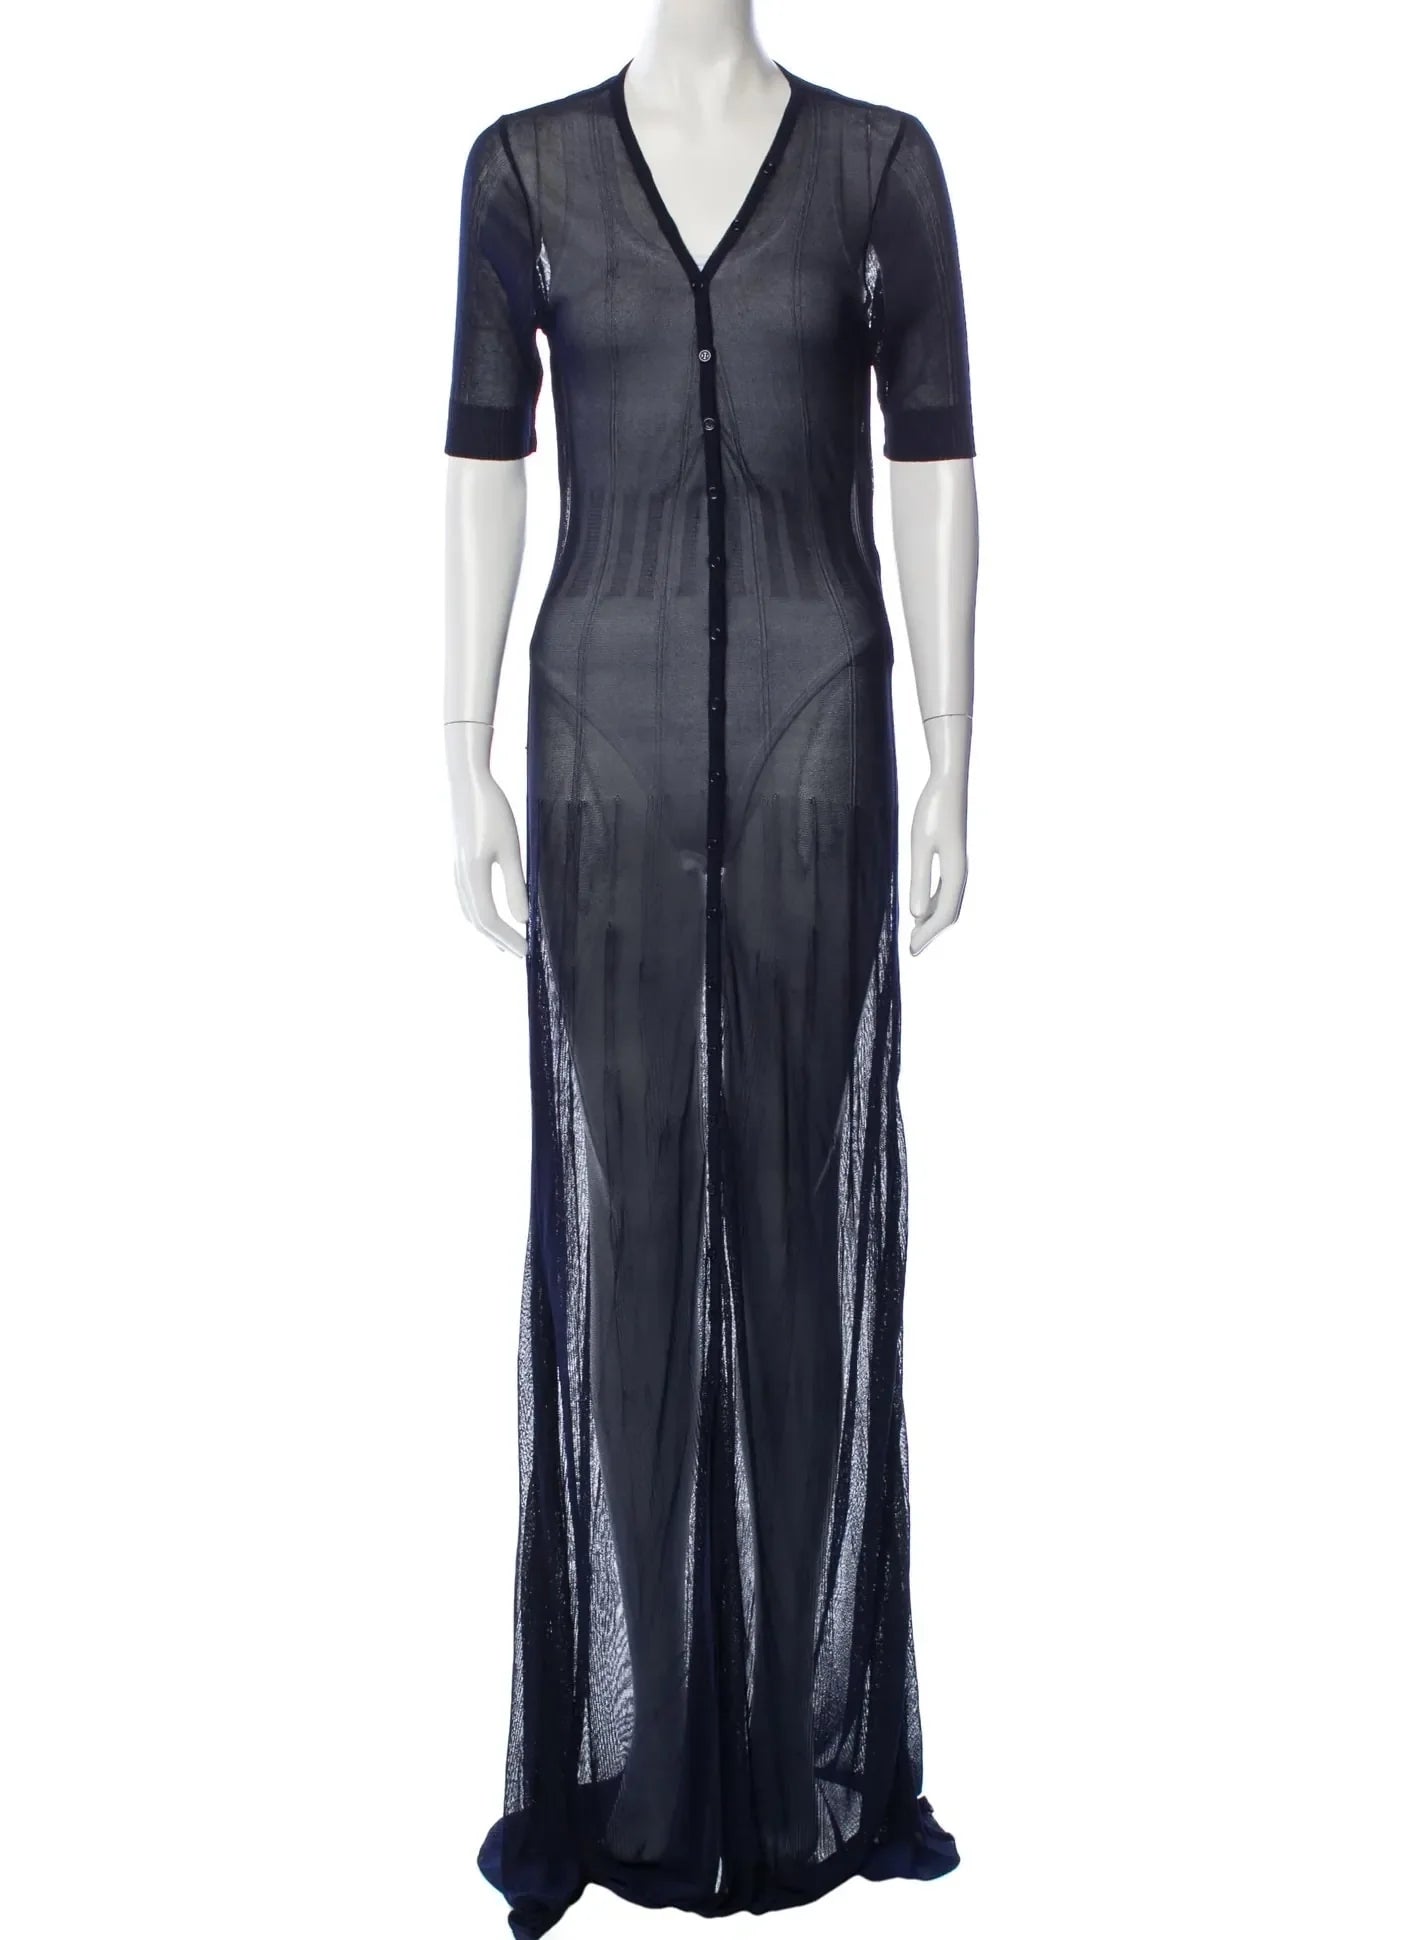 V-Neck Long Dress w/ Tags
Size: S | US4, FR36